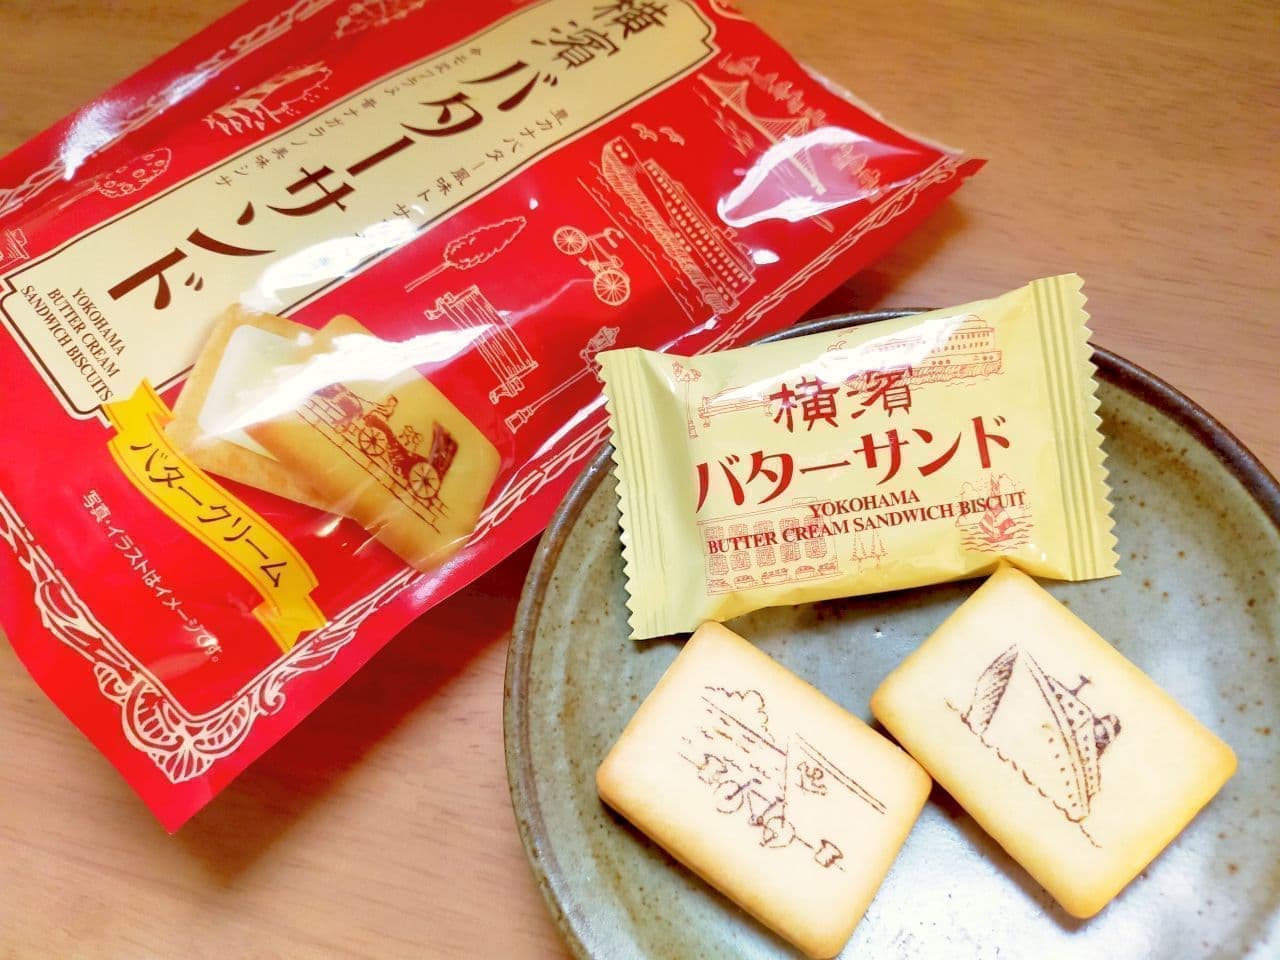 Takara Confectionery "Yokohama Butter Sandwich"